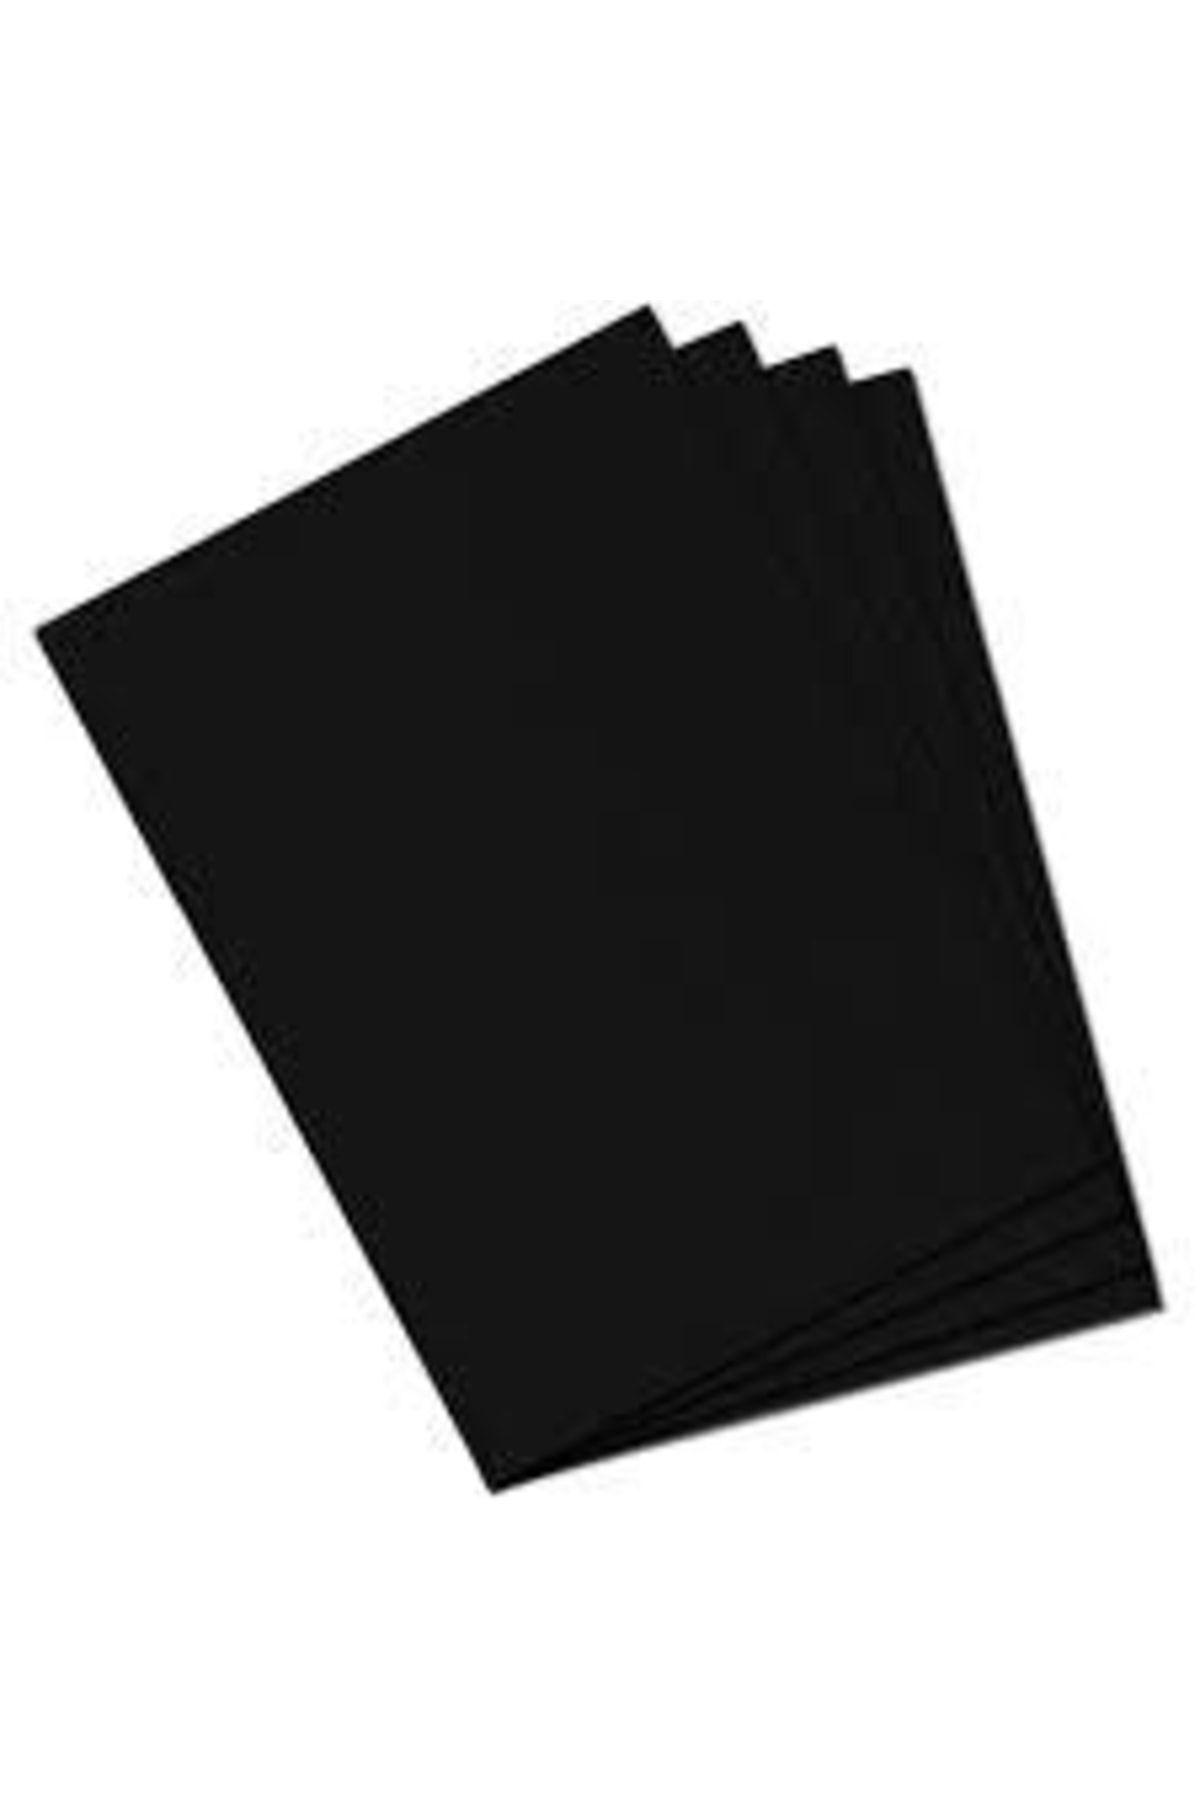 Paperart Fon Kartonu 50x70 Cm 120 gr Siyah 100 Lü (1 PAKET 100 ADET) Hamurundan Boyama